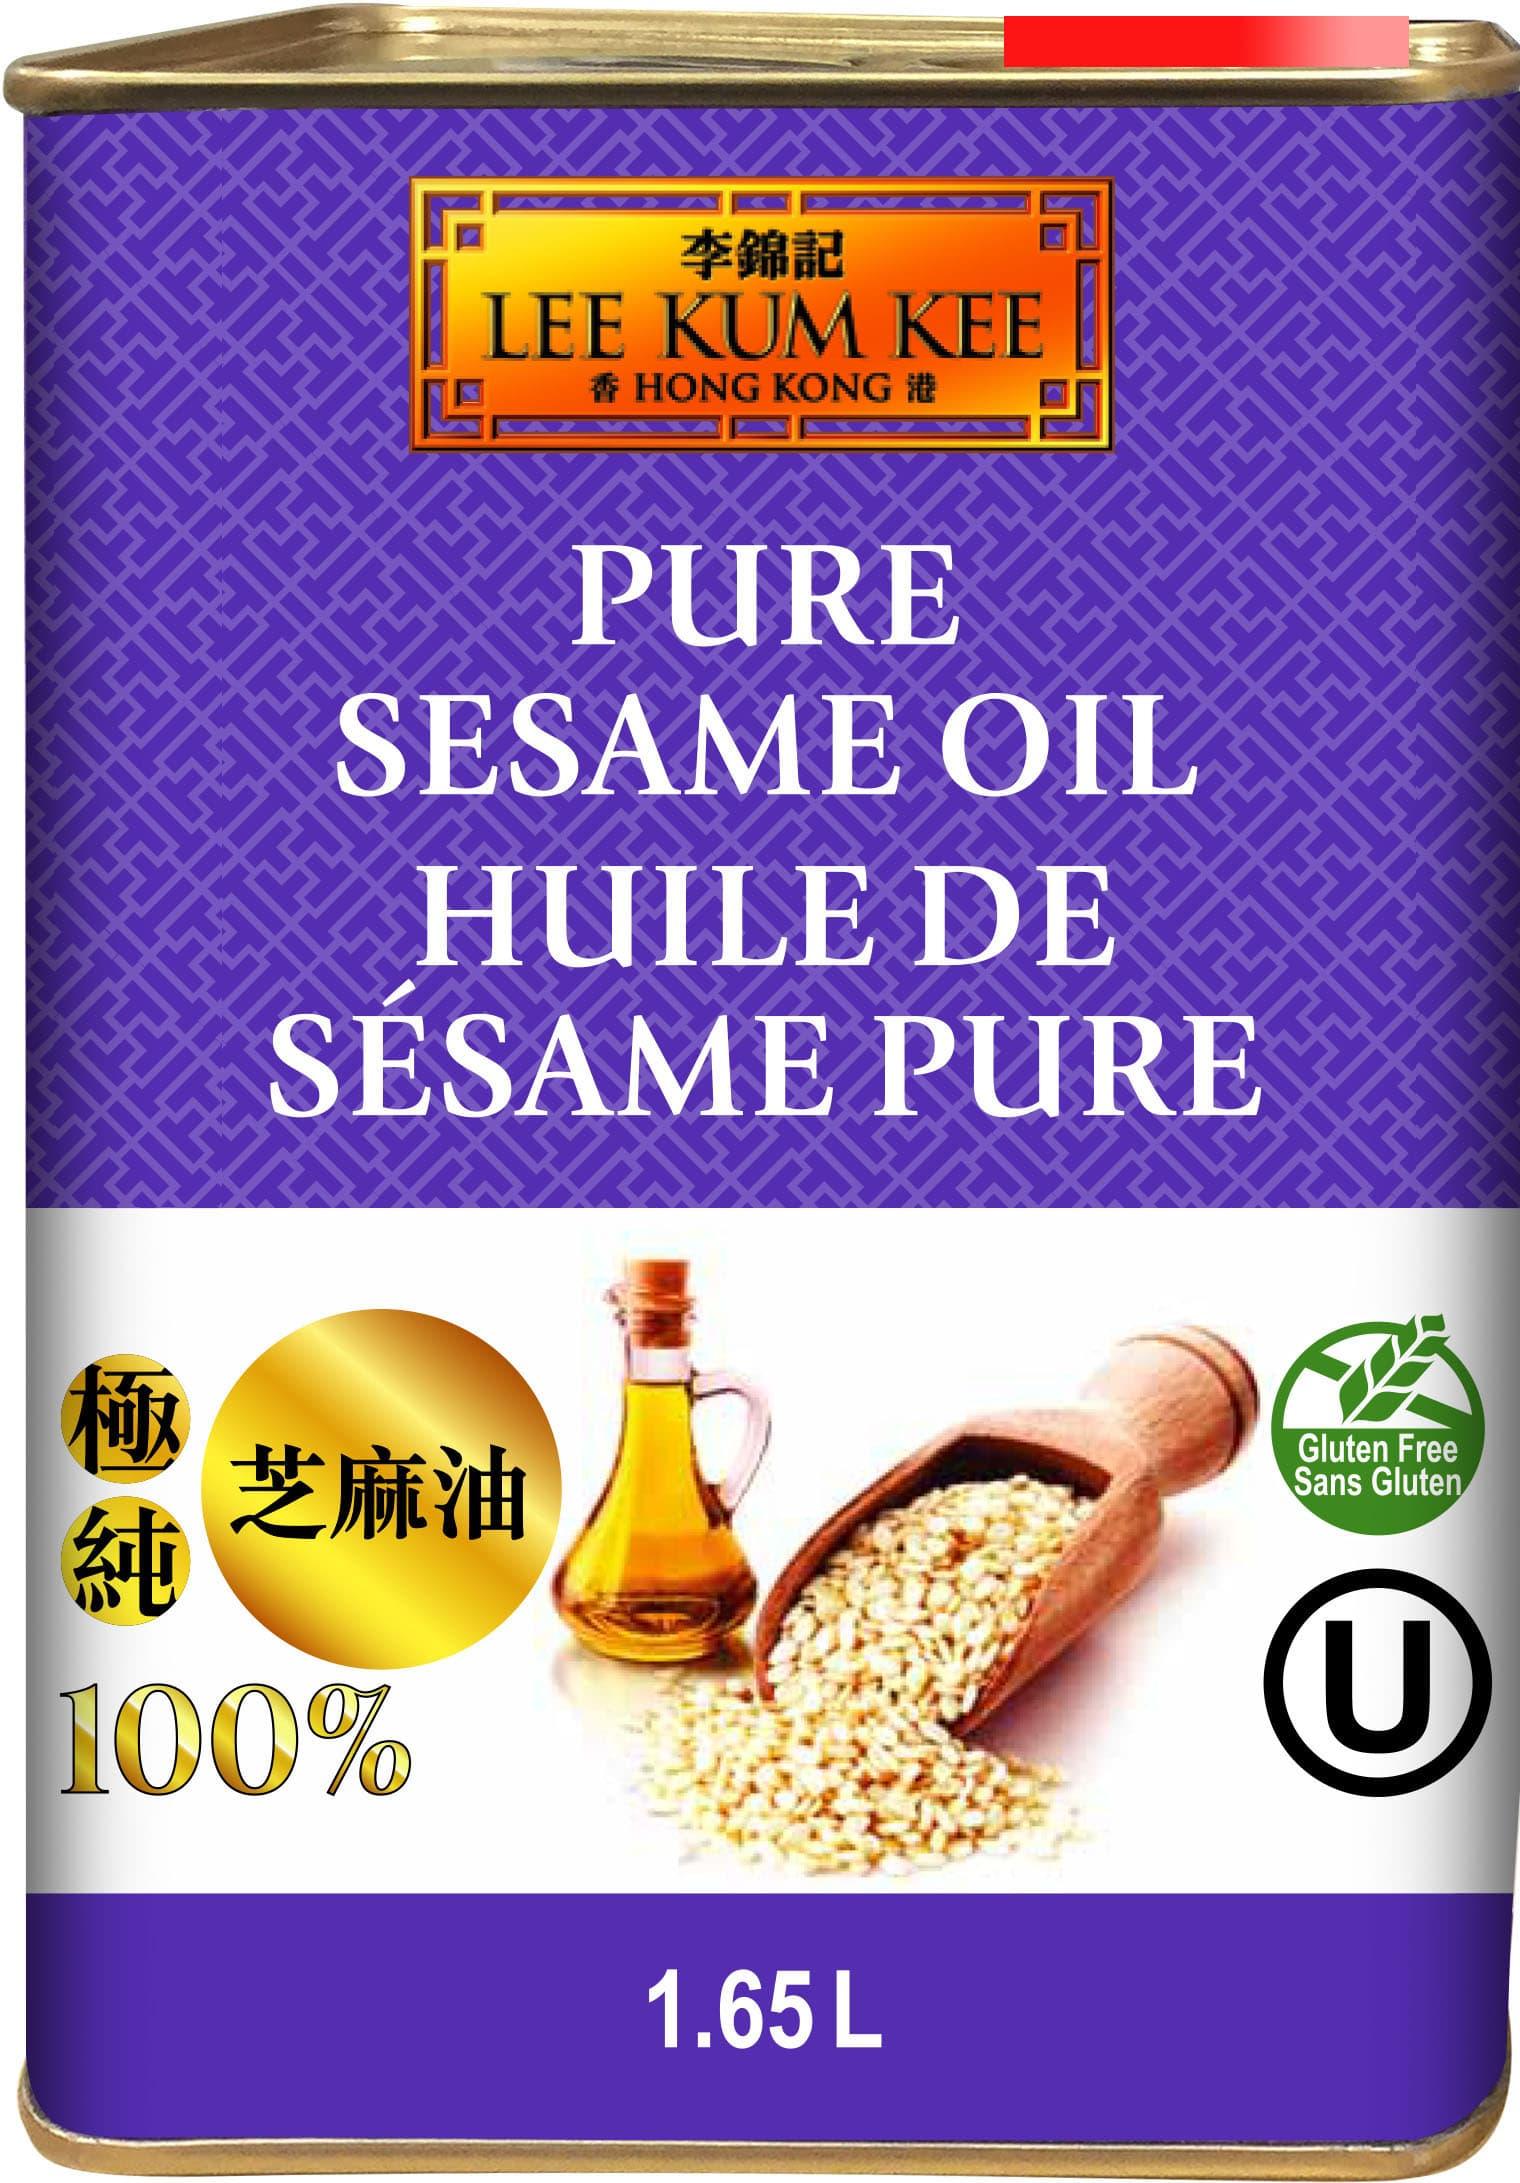 lee-kum-kee-pure-sesame-oil